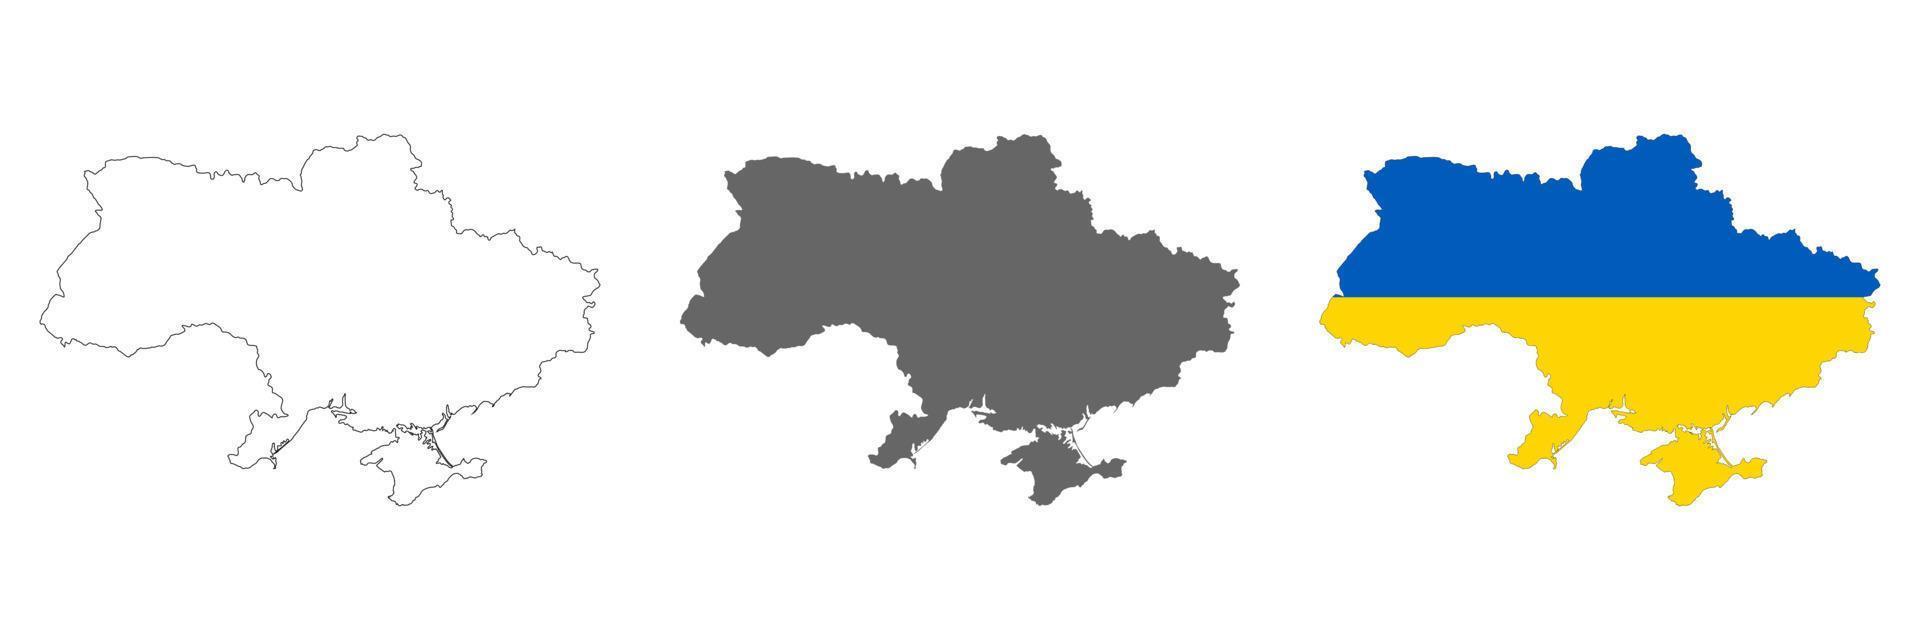 Mapa de Ucrania muy detallado con bordes aislados en segundo plano. vector